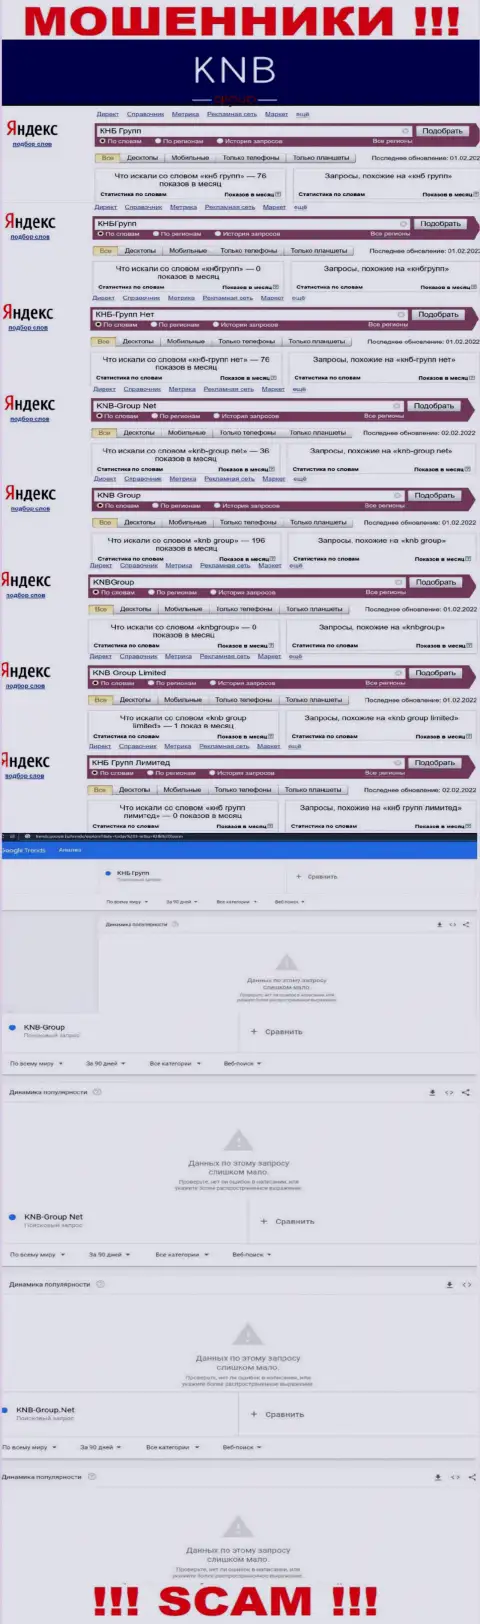 Скриншот результата запросов по противозаконно действующей компании KNB Group